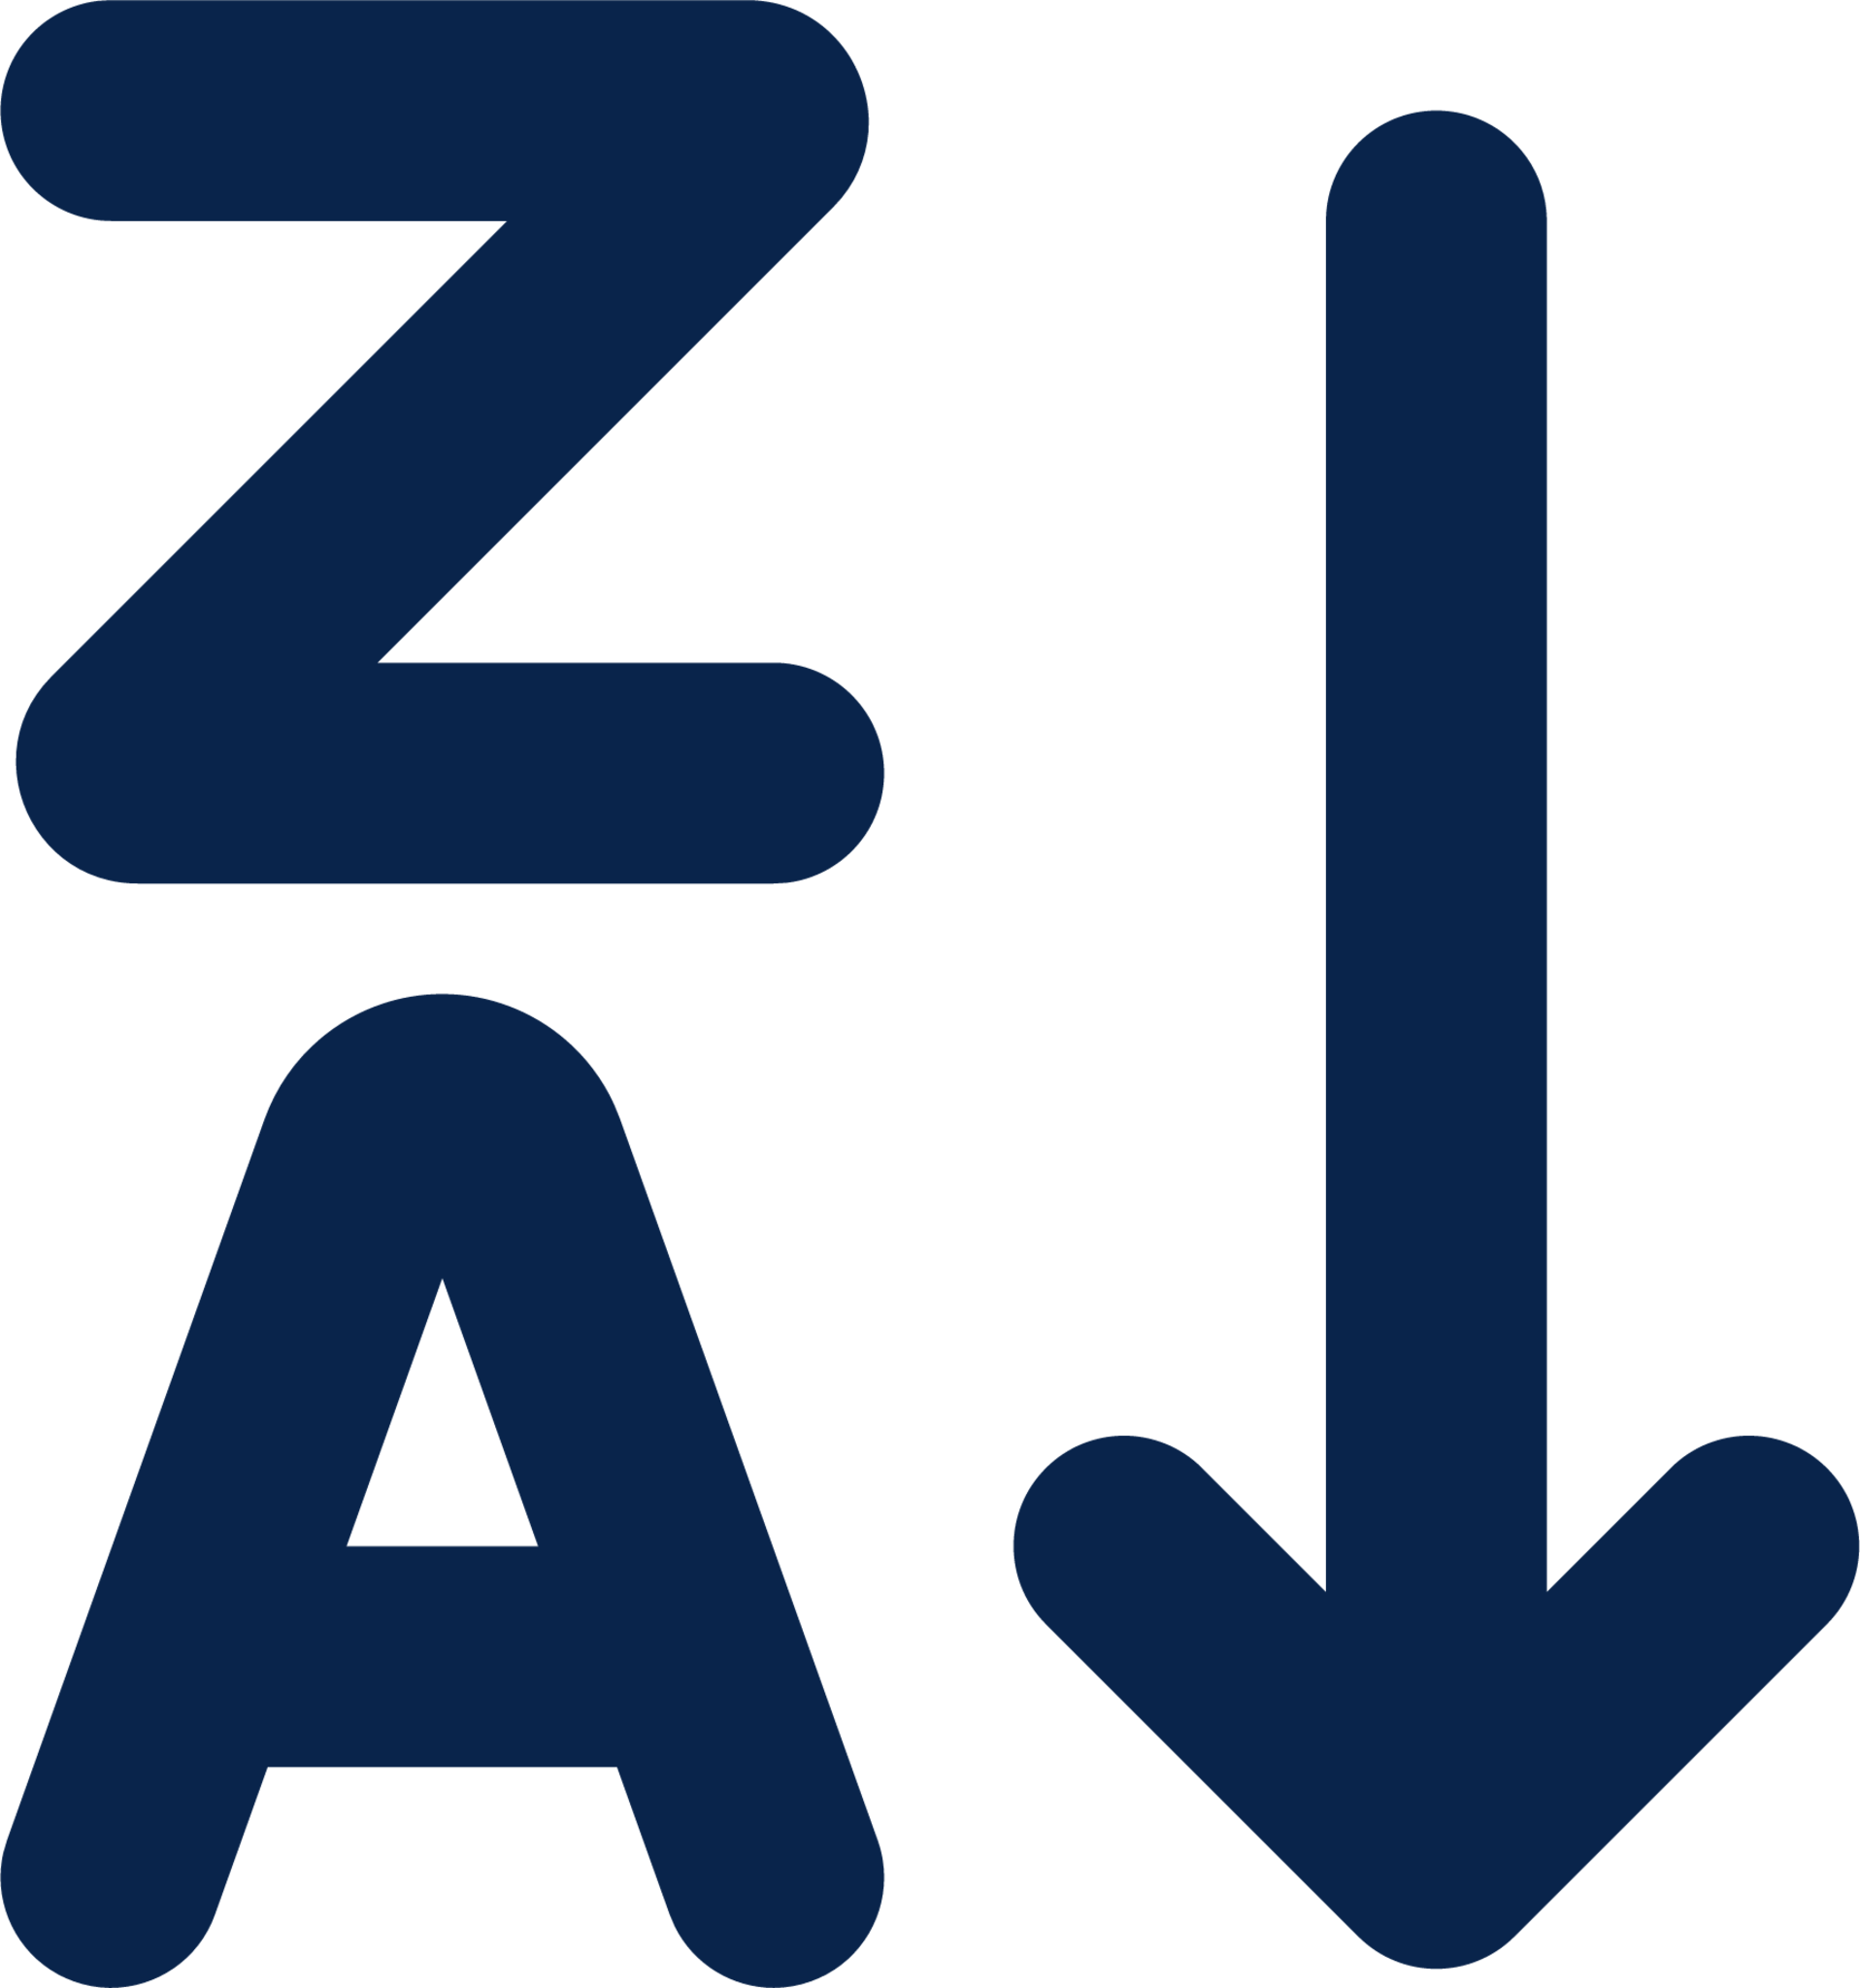 ZA sort descending letters line editor icon